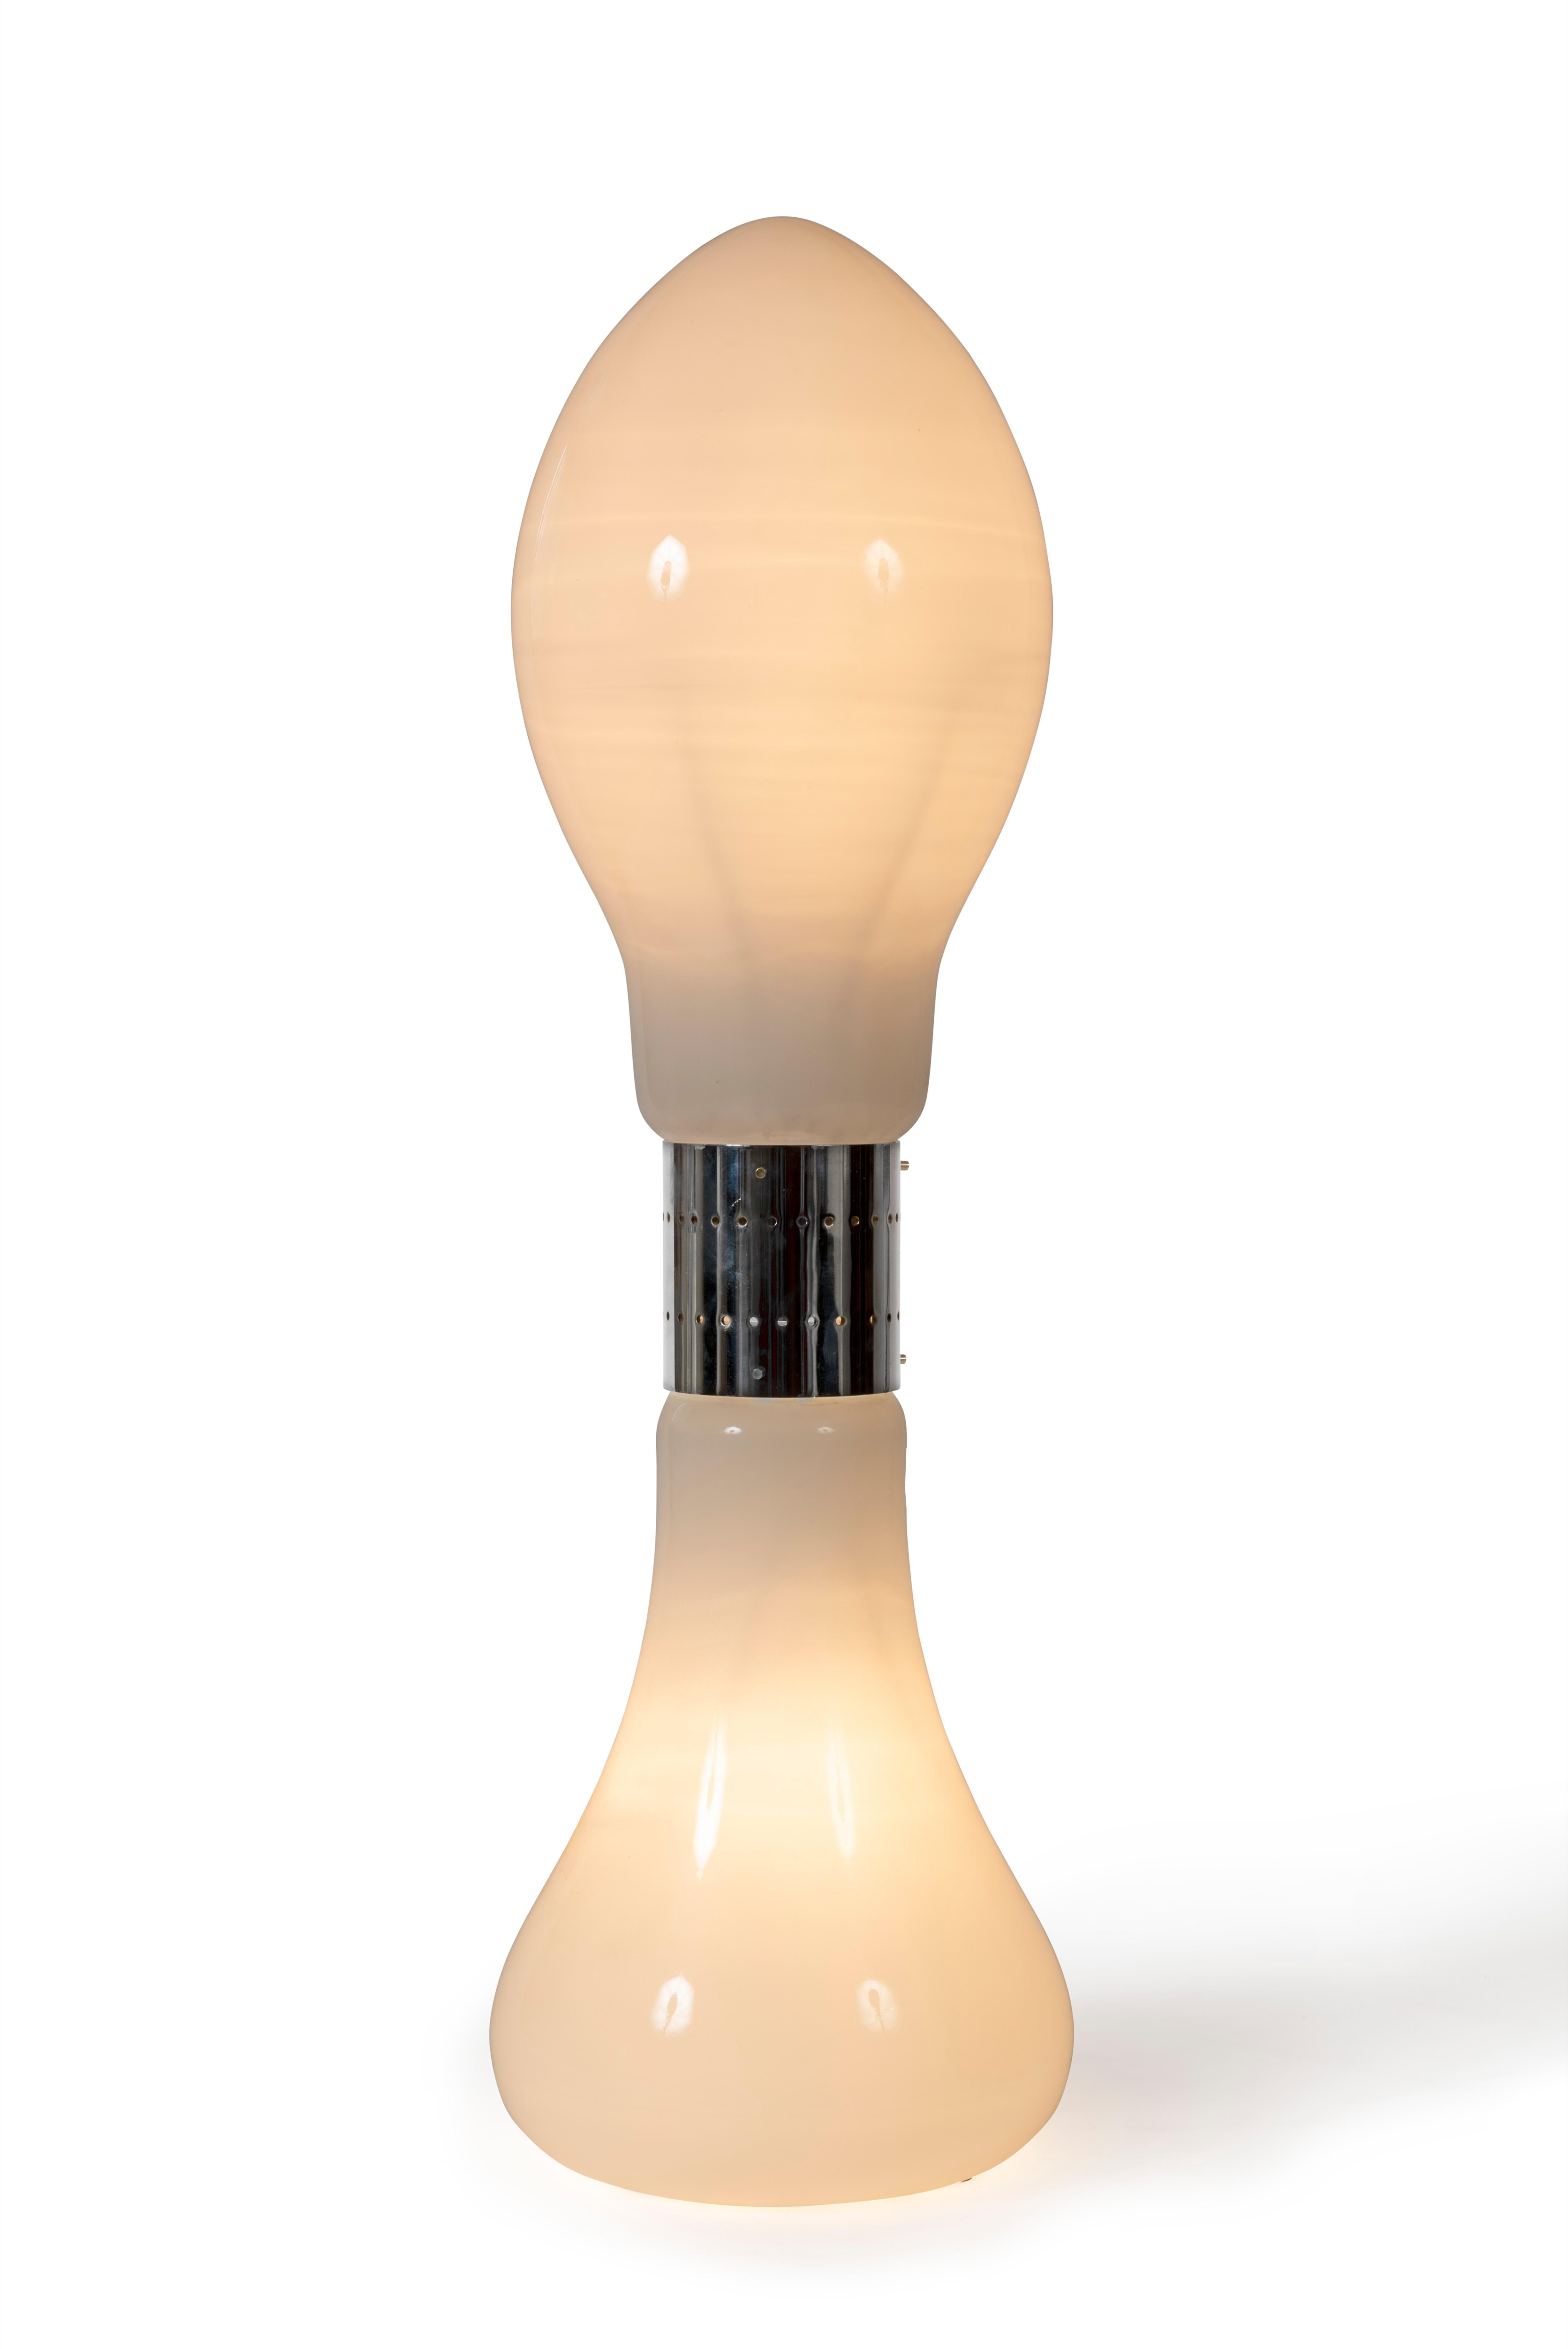 Lampadaire blanc italien “Birillo” par Carlo Nason pour Mazzega des années 1960.

En verre soufflé opaline de Murano avec une jonction en métal chromé.

Trois possibilités d’éclairage indépendant.

Dimensions : H112xL32xP32cm

Vente à l’unité ou du